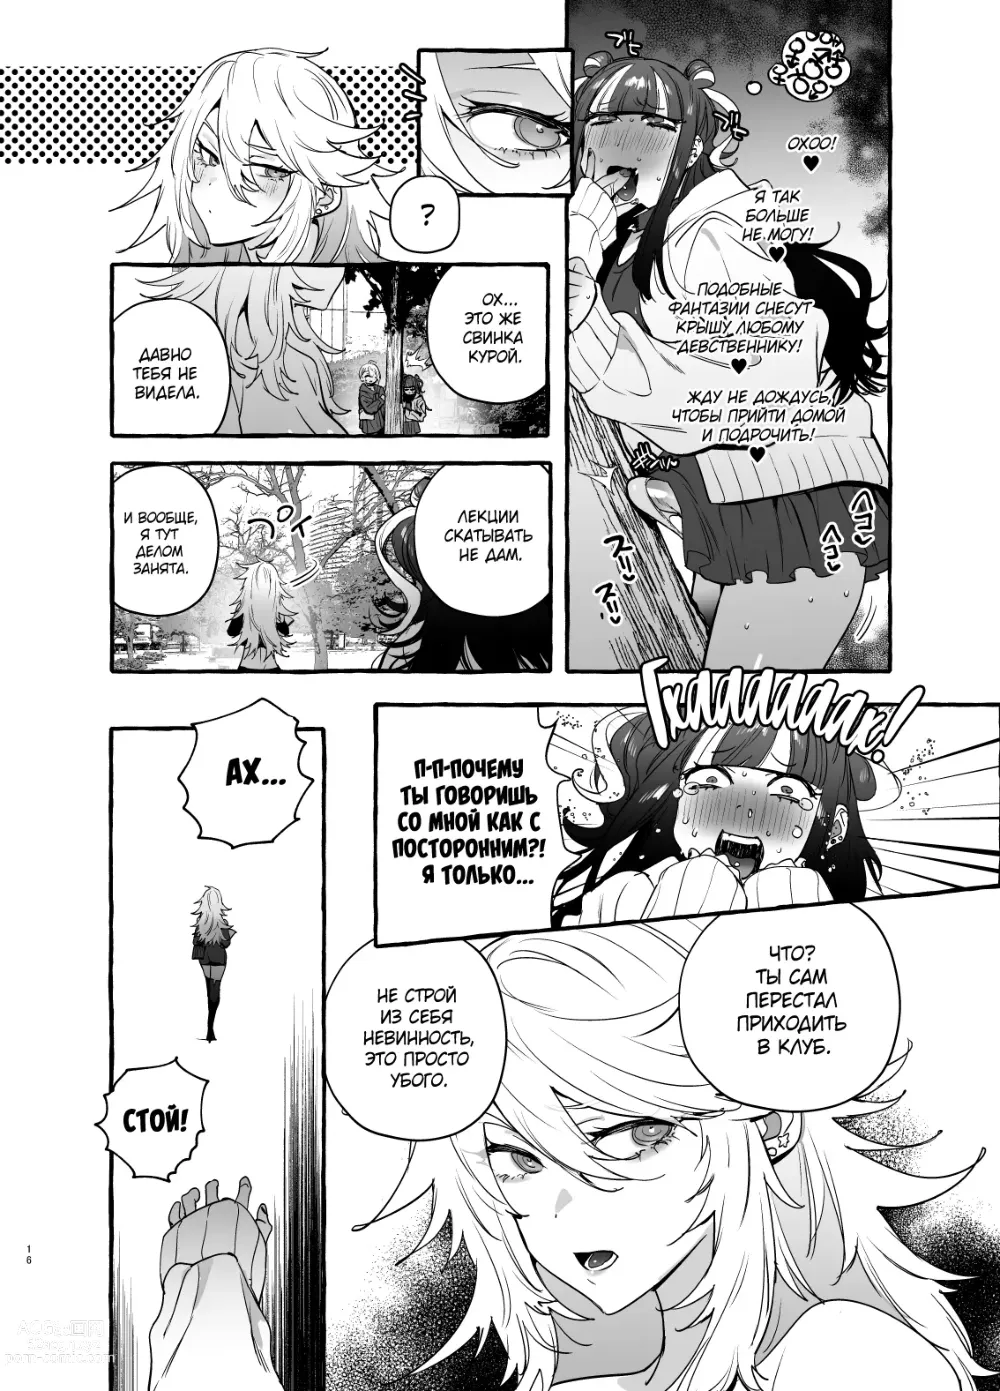 Page 18 of doujinshi Otaku Gyaru VS Toxic Boy (decensored)